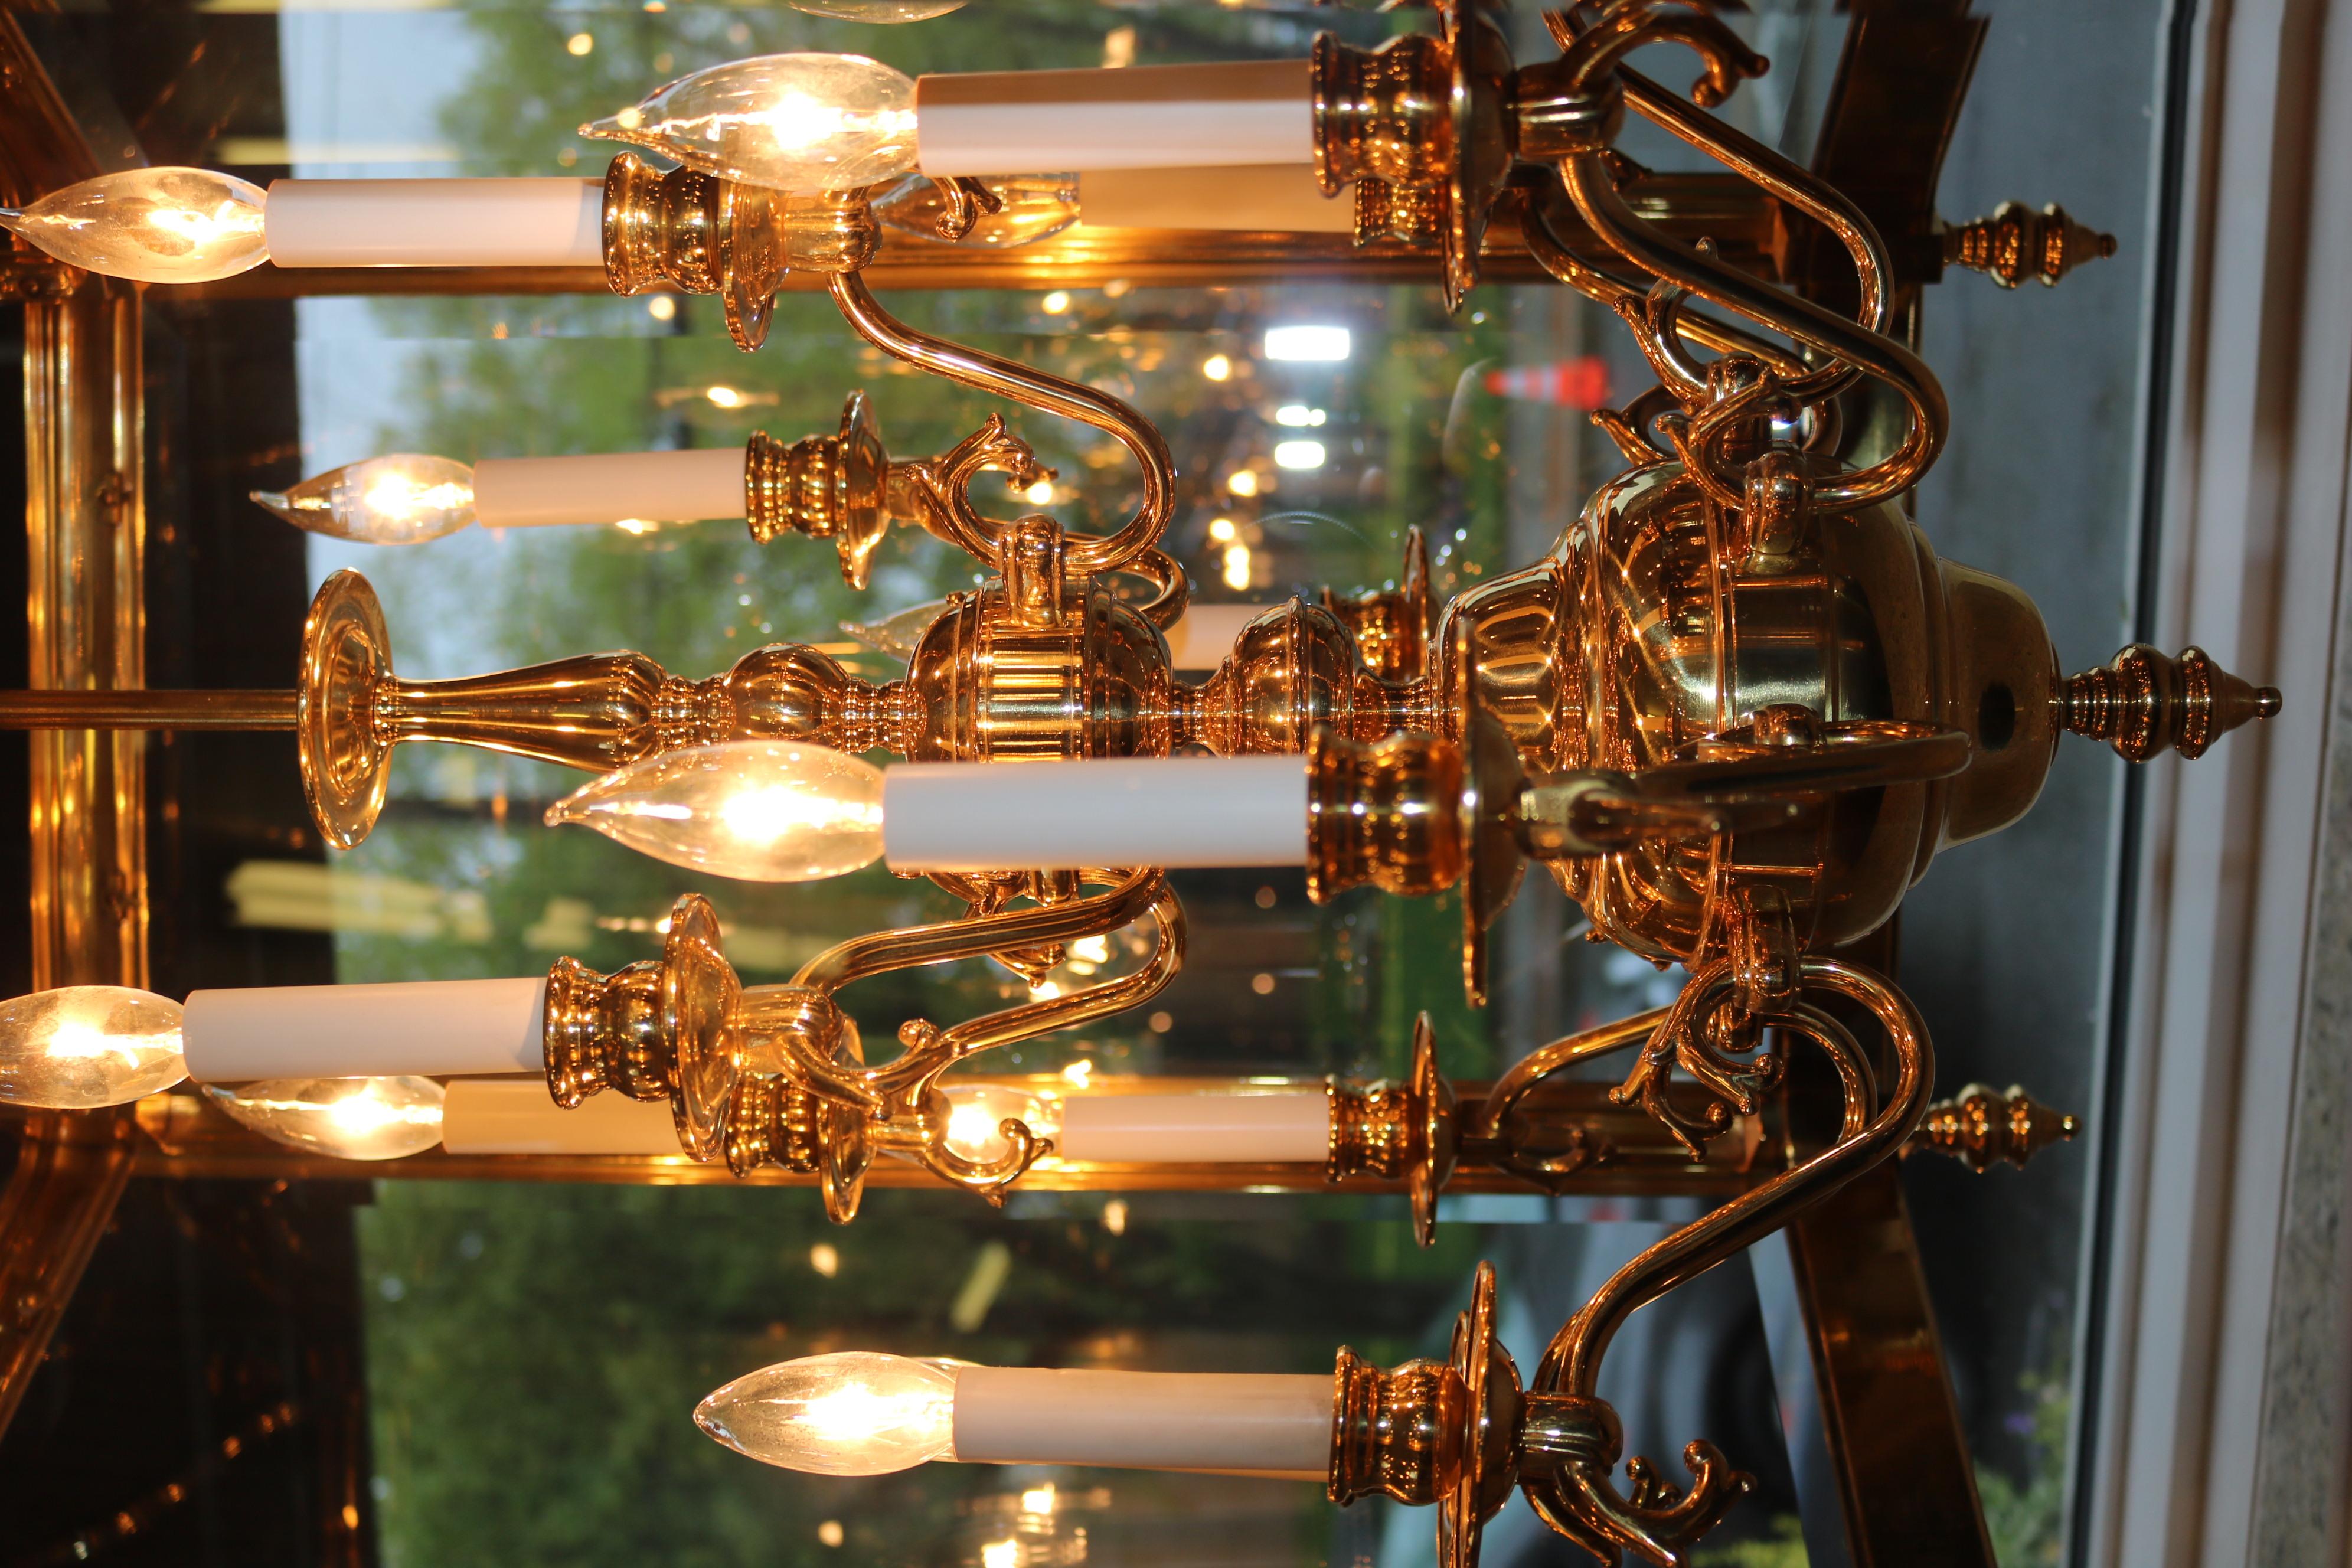 Monumental Over 4 FT Tall 12 Light Brass & Glass Chandelier Lantern 7